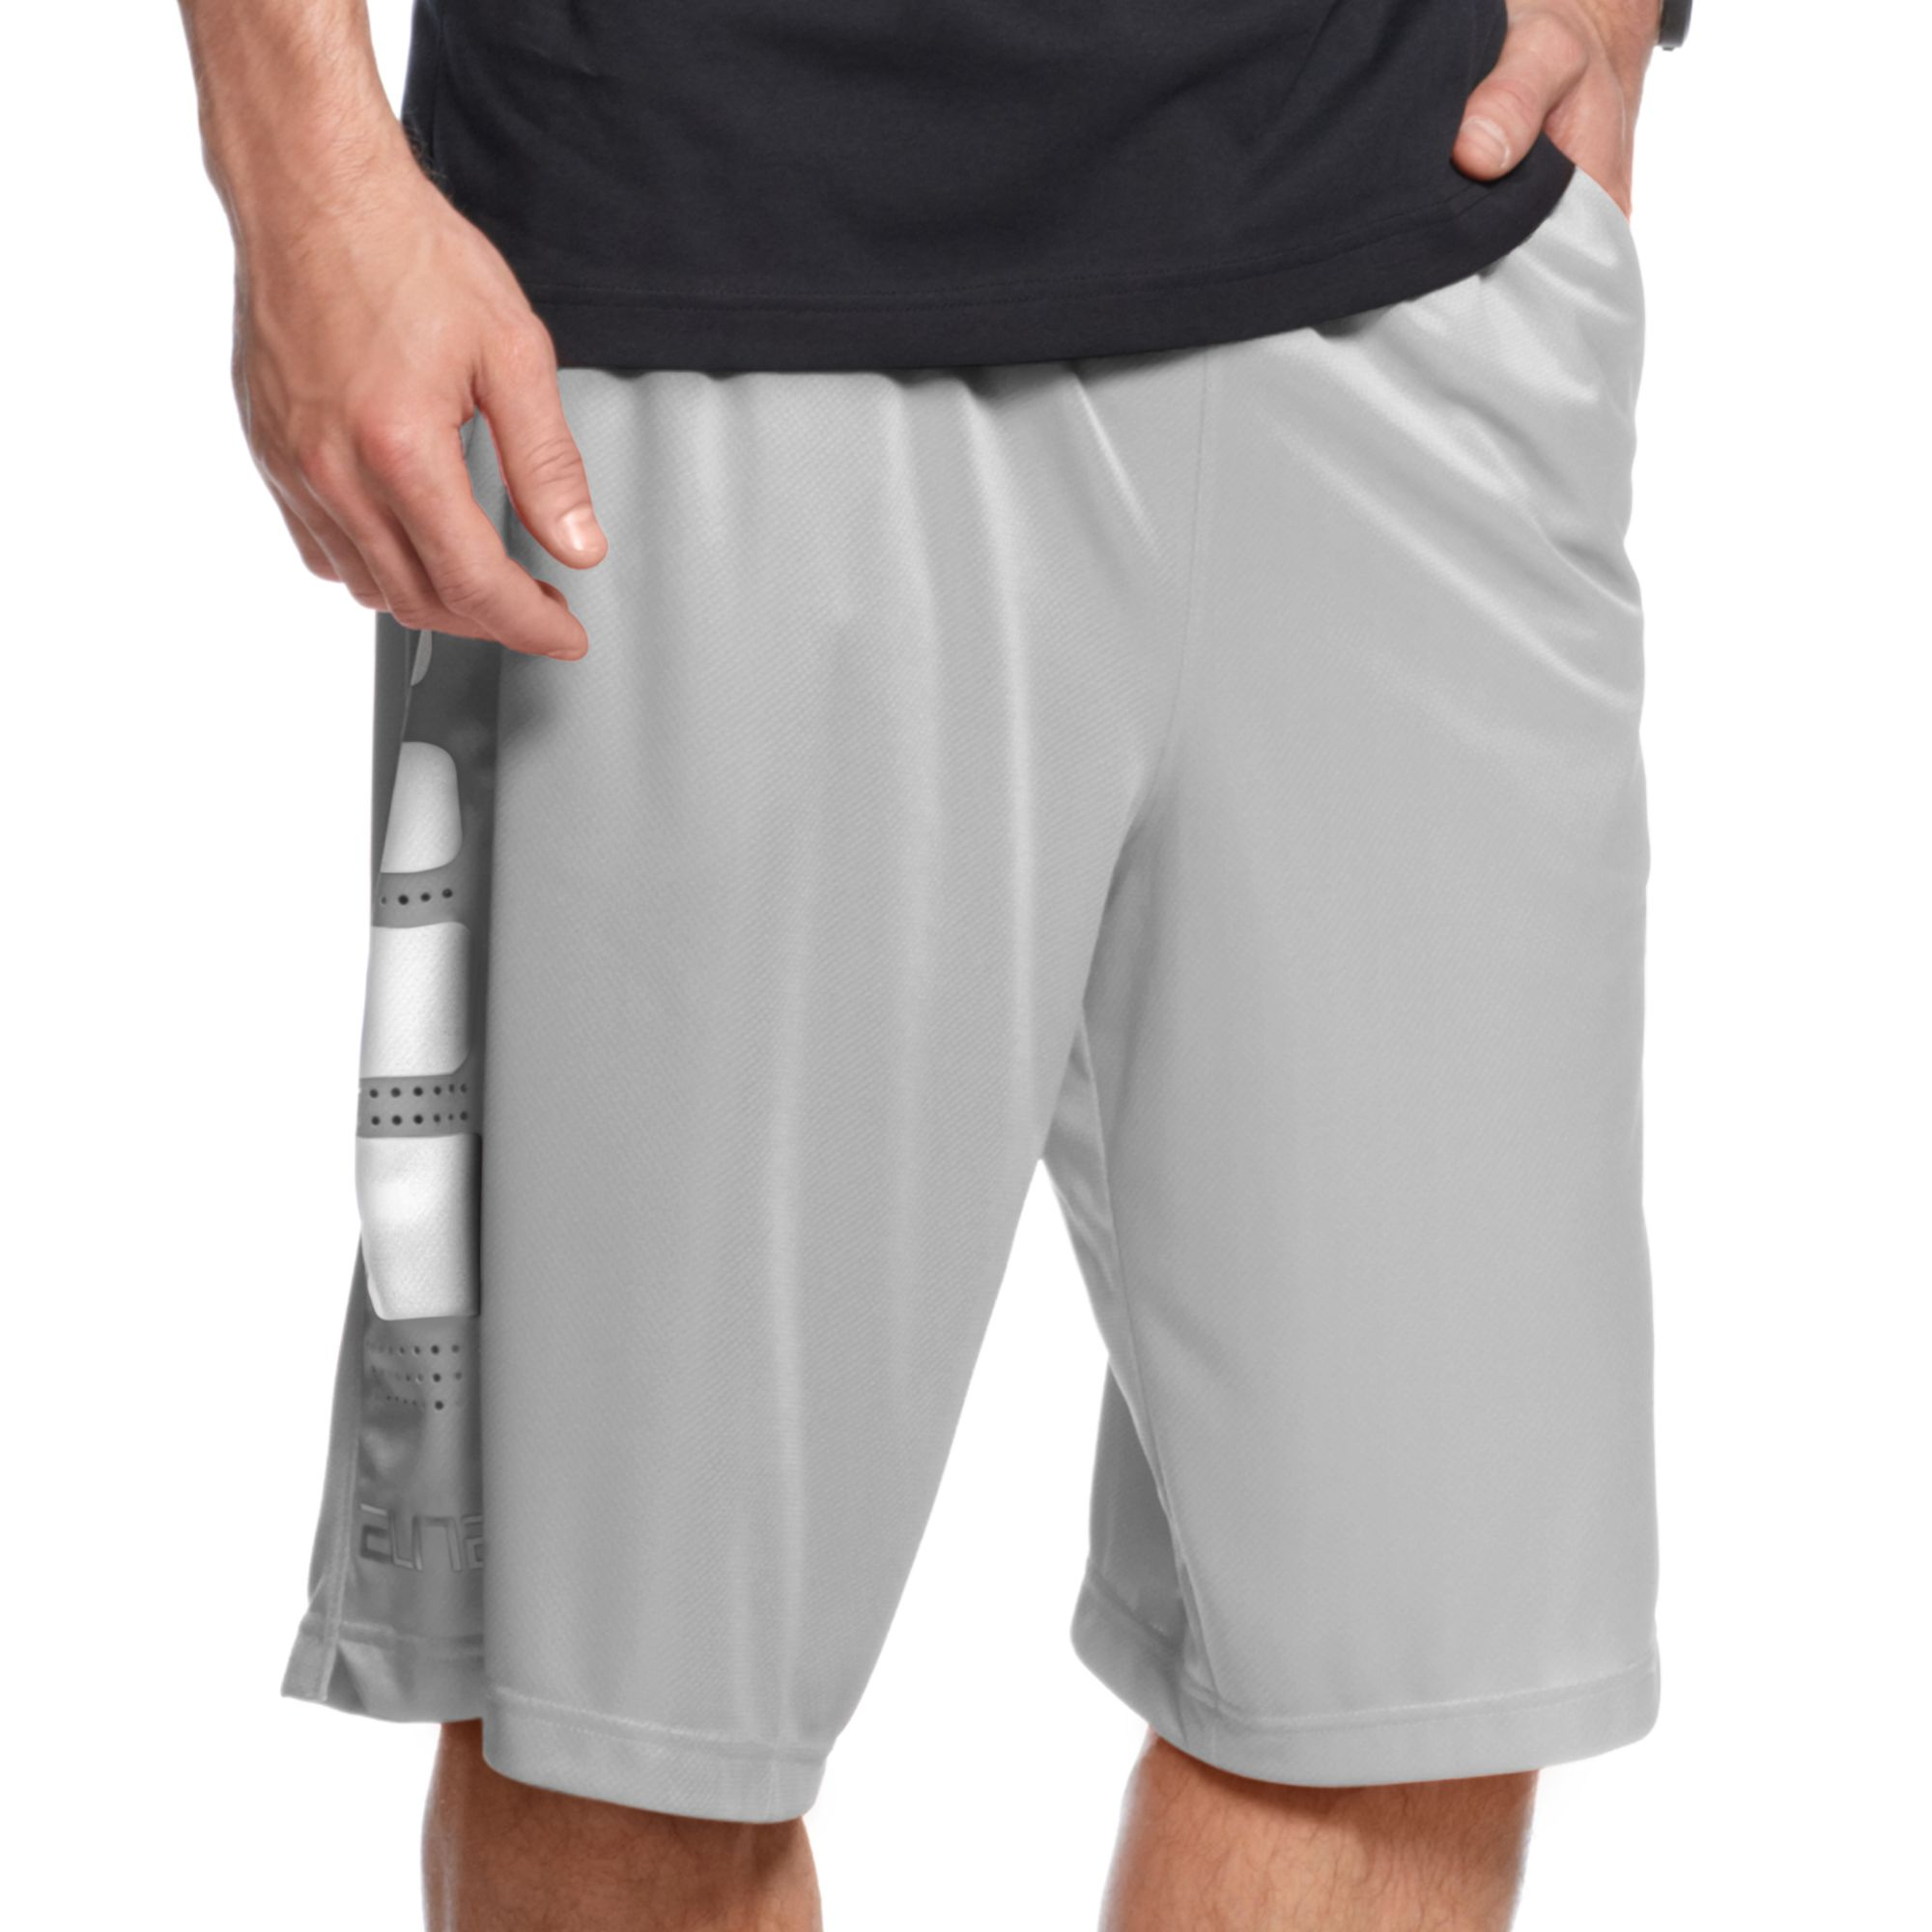 nike 9 inch basketball shorts